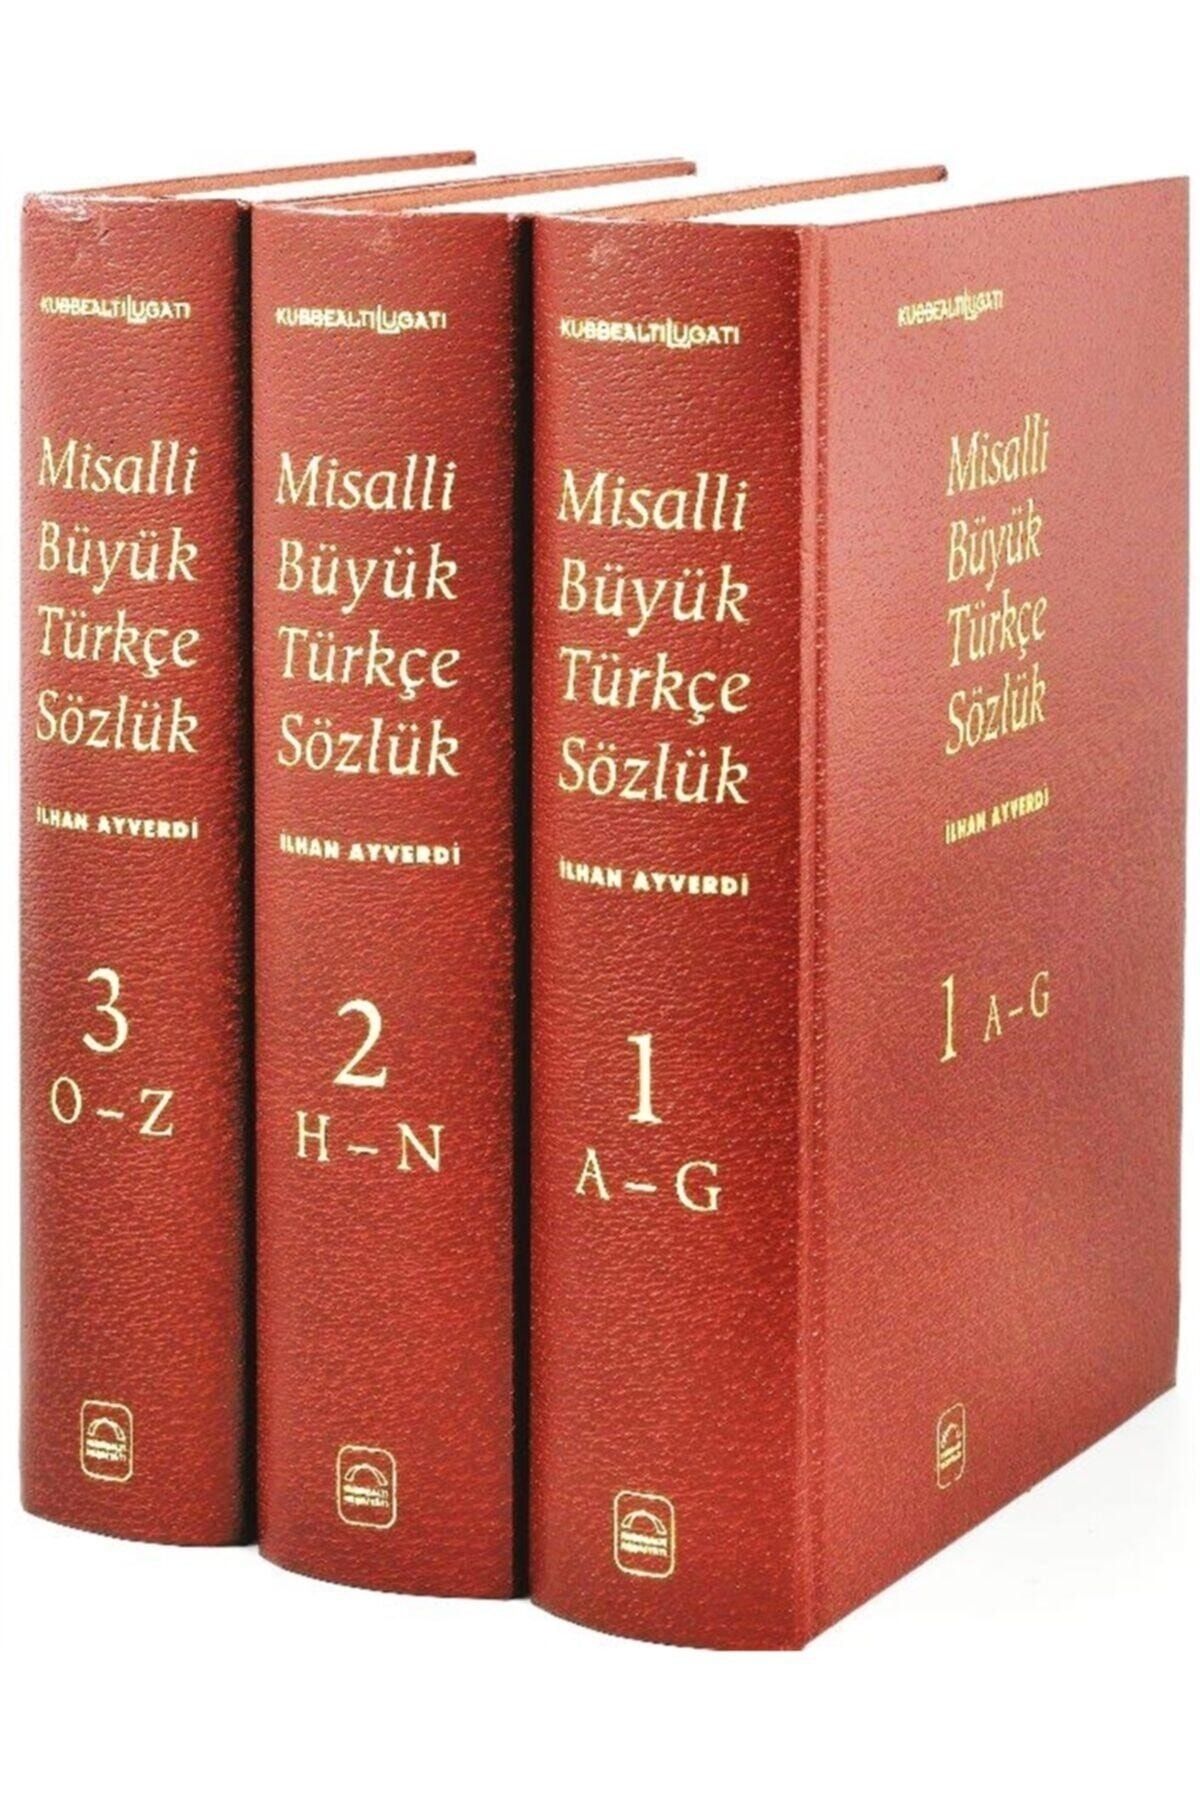 Kubbealtı Neşriyat Misalli Büyük Türkçe Sözlük - 3 Cilt Takım